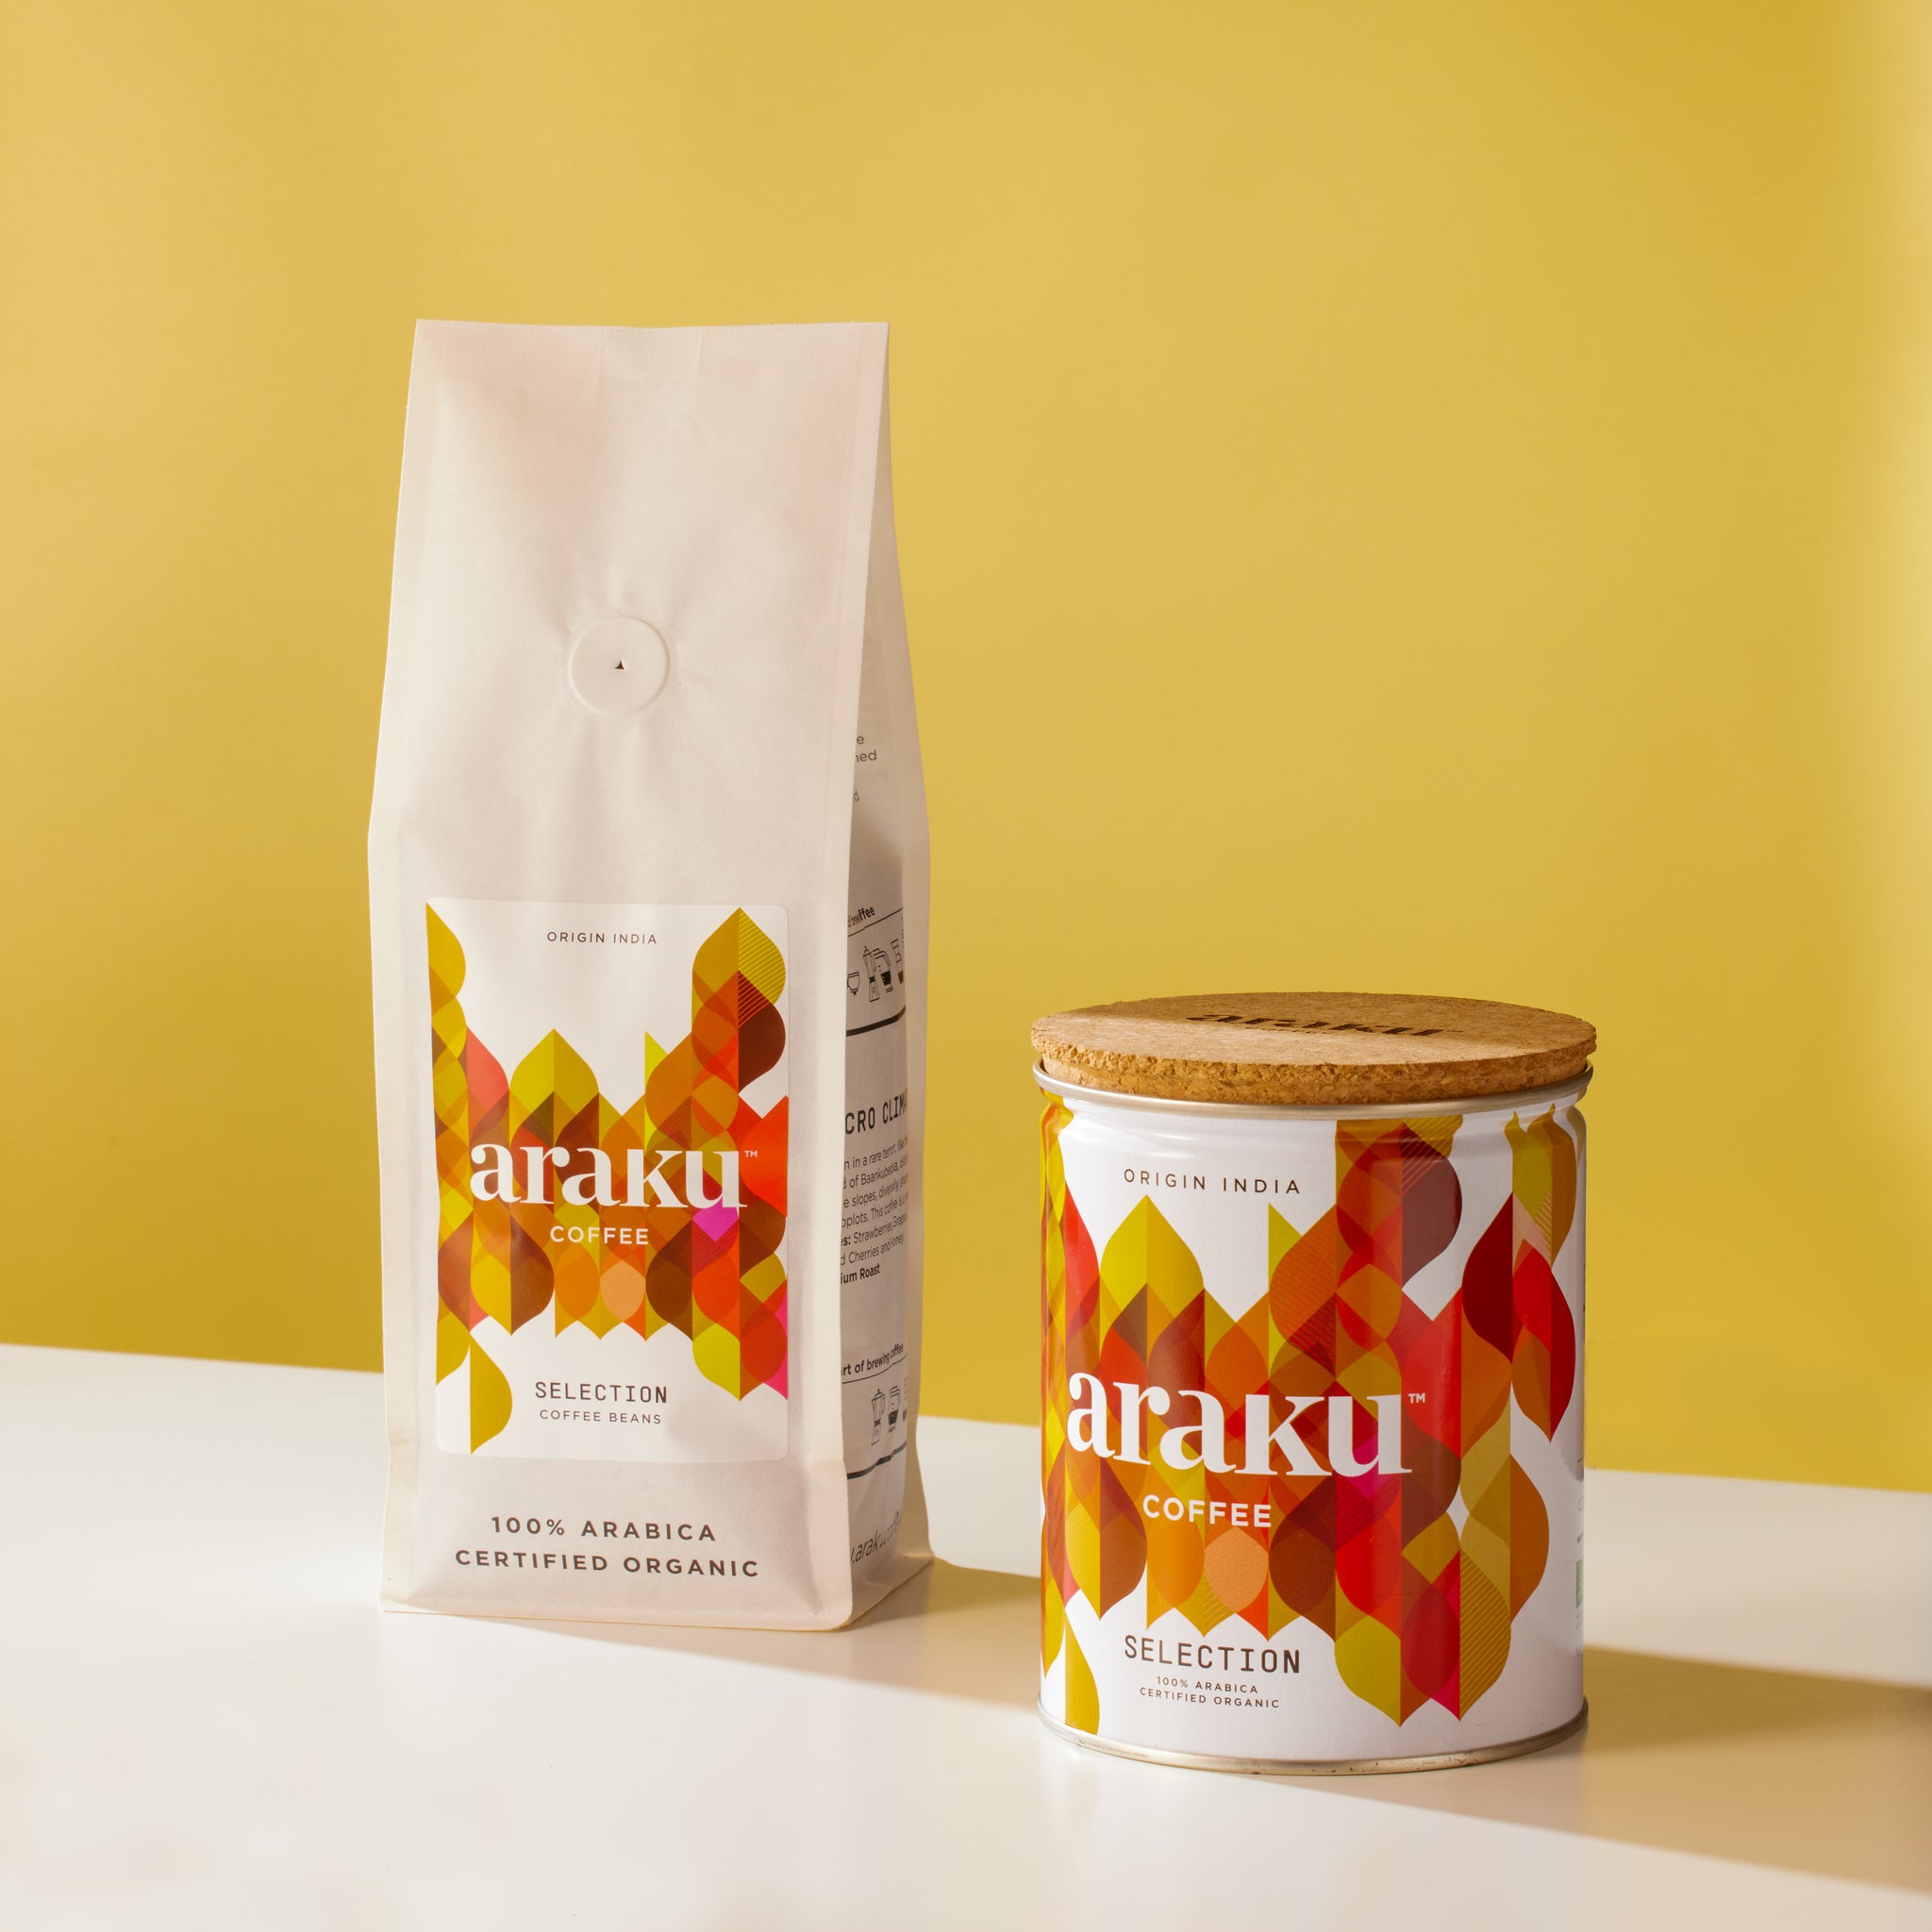 Araku Coffee India